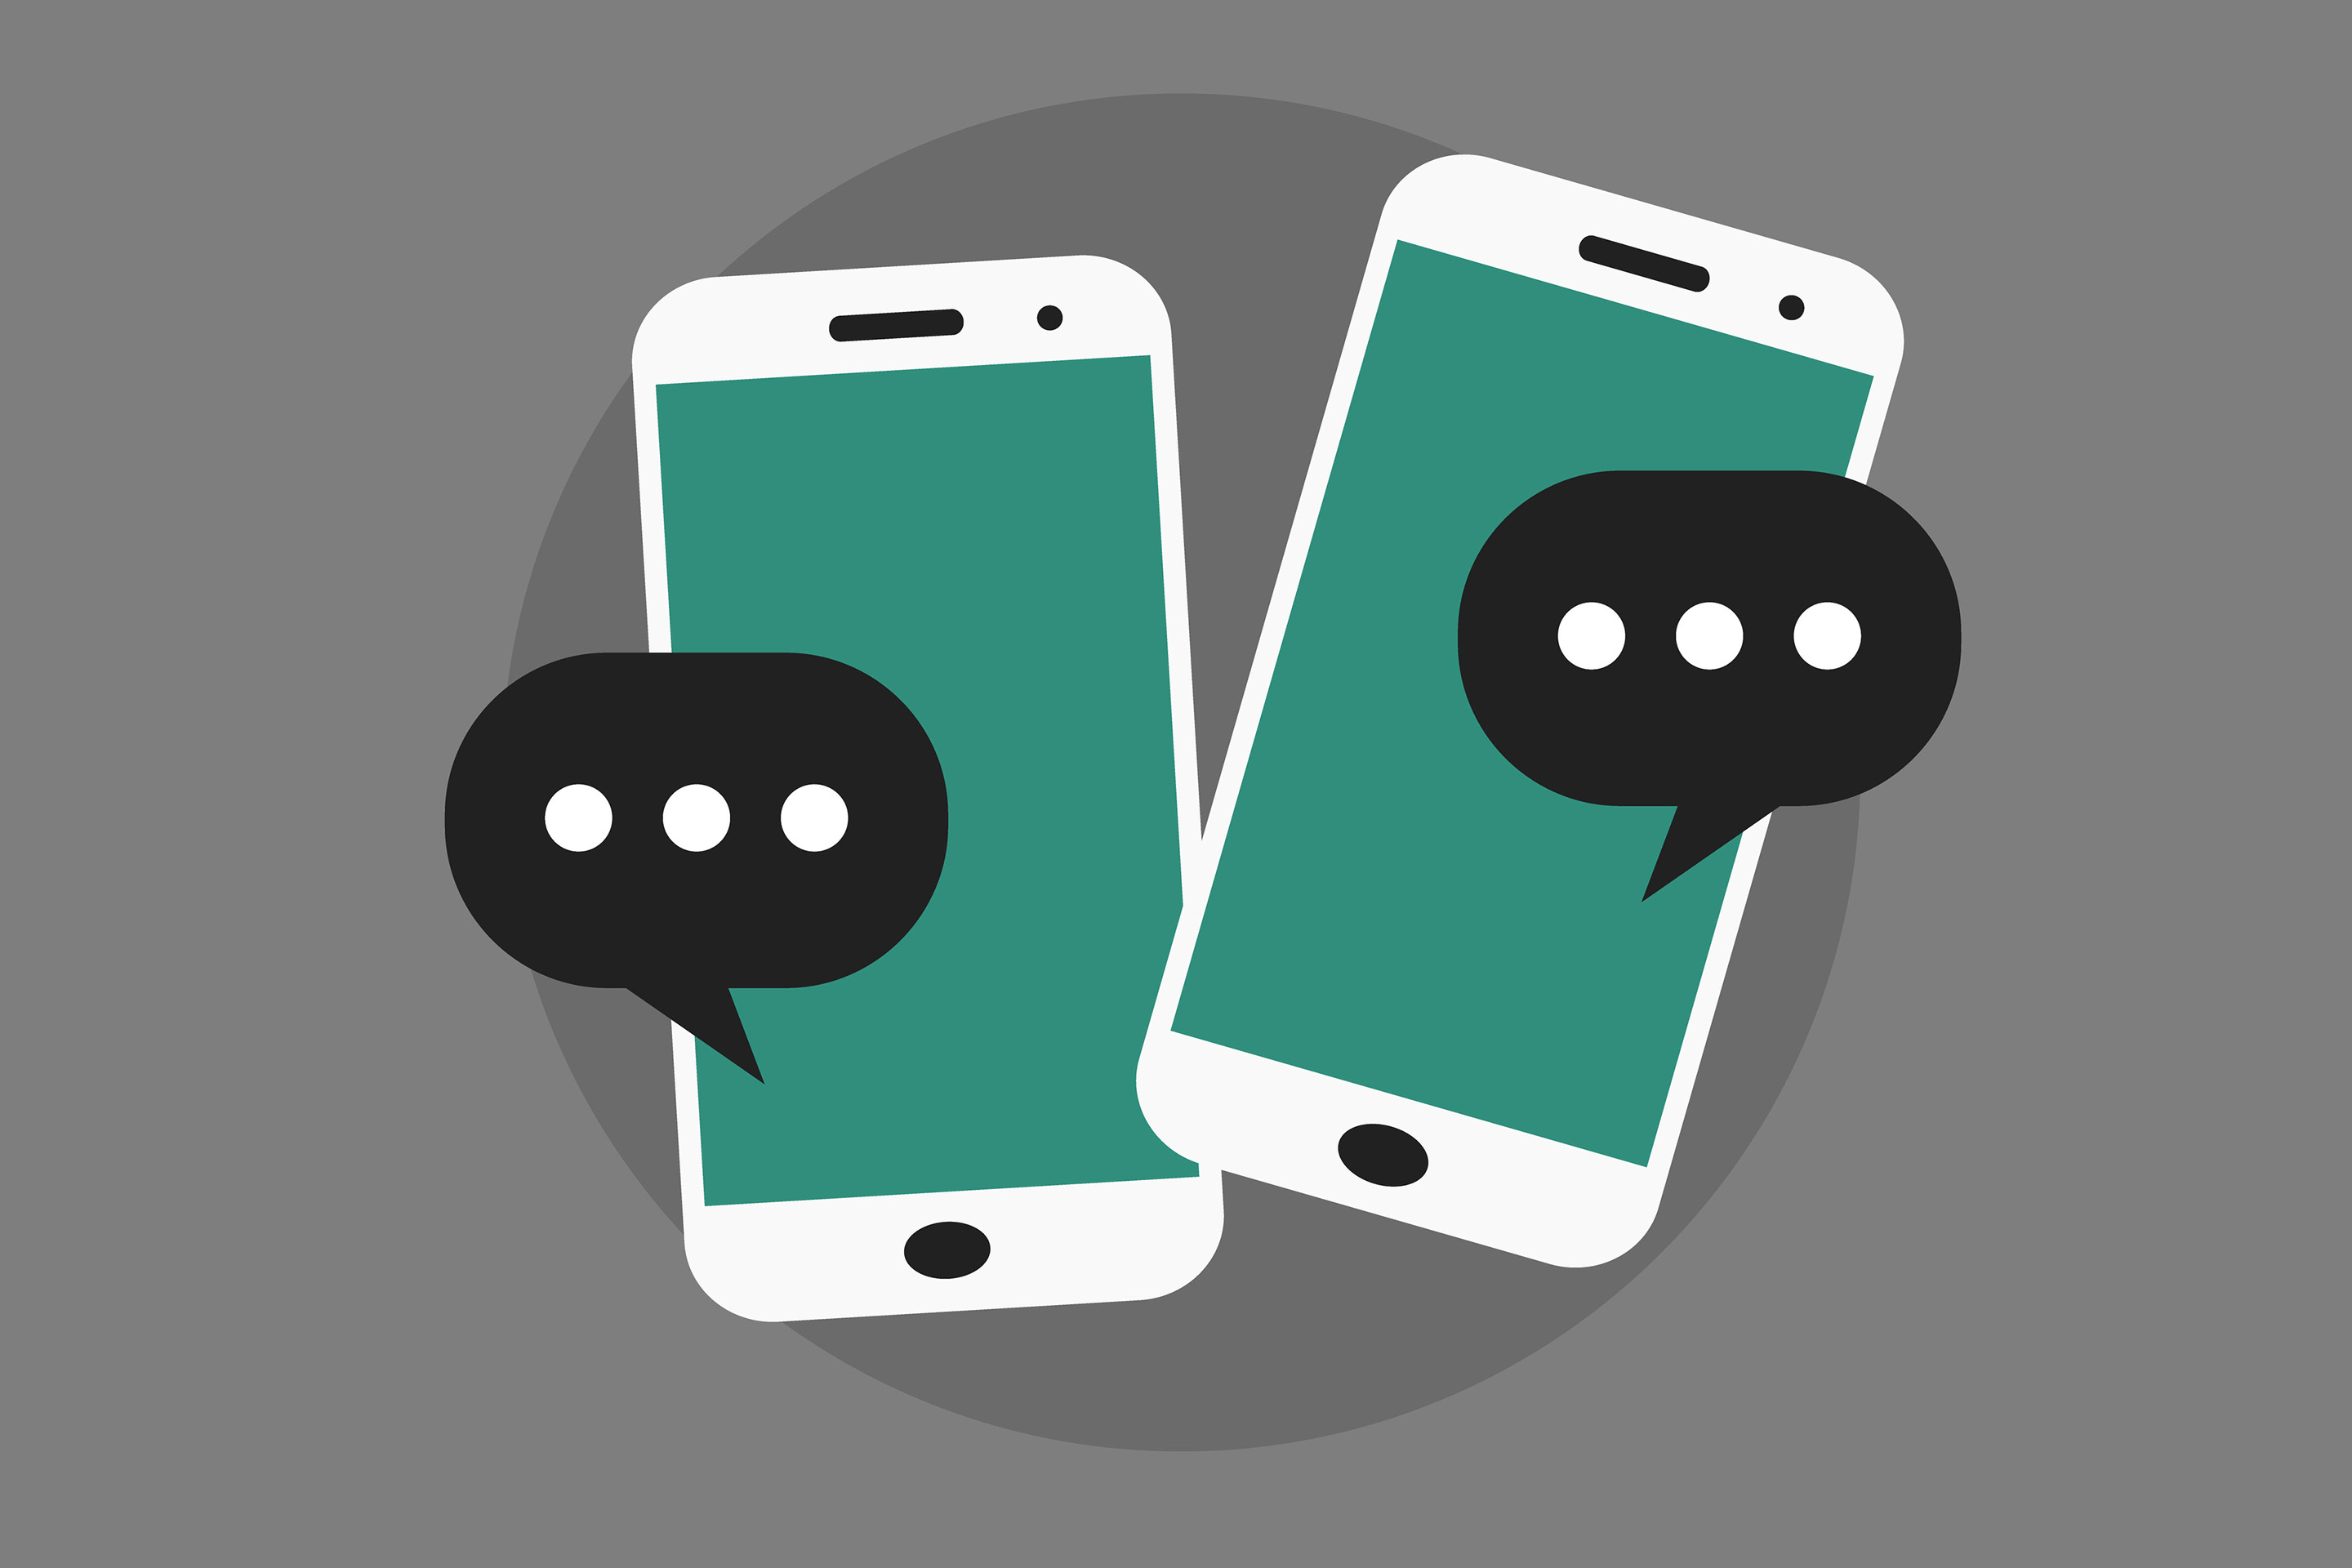  Comment transférer ses SMS sur son nouveau smartphone Android